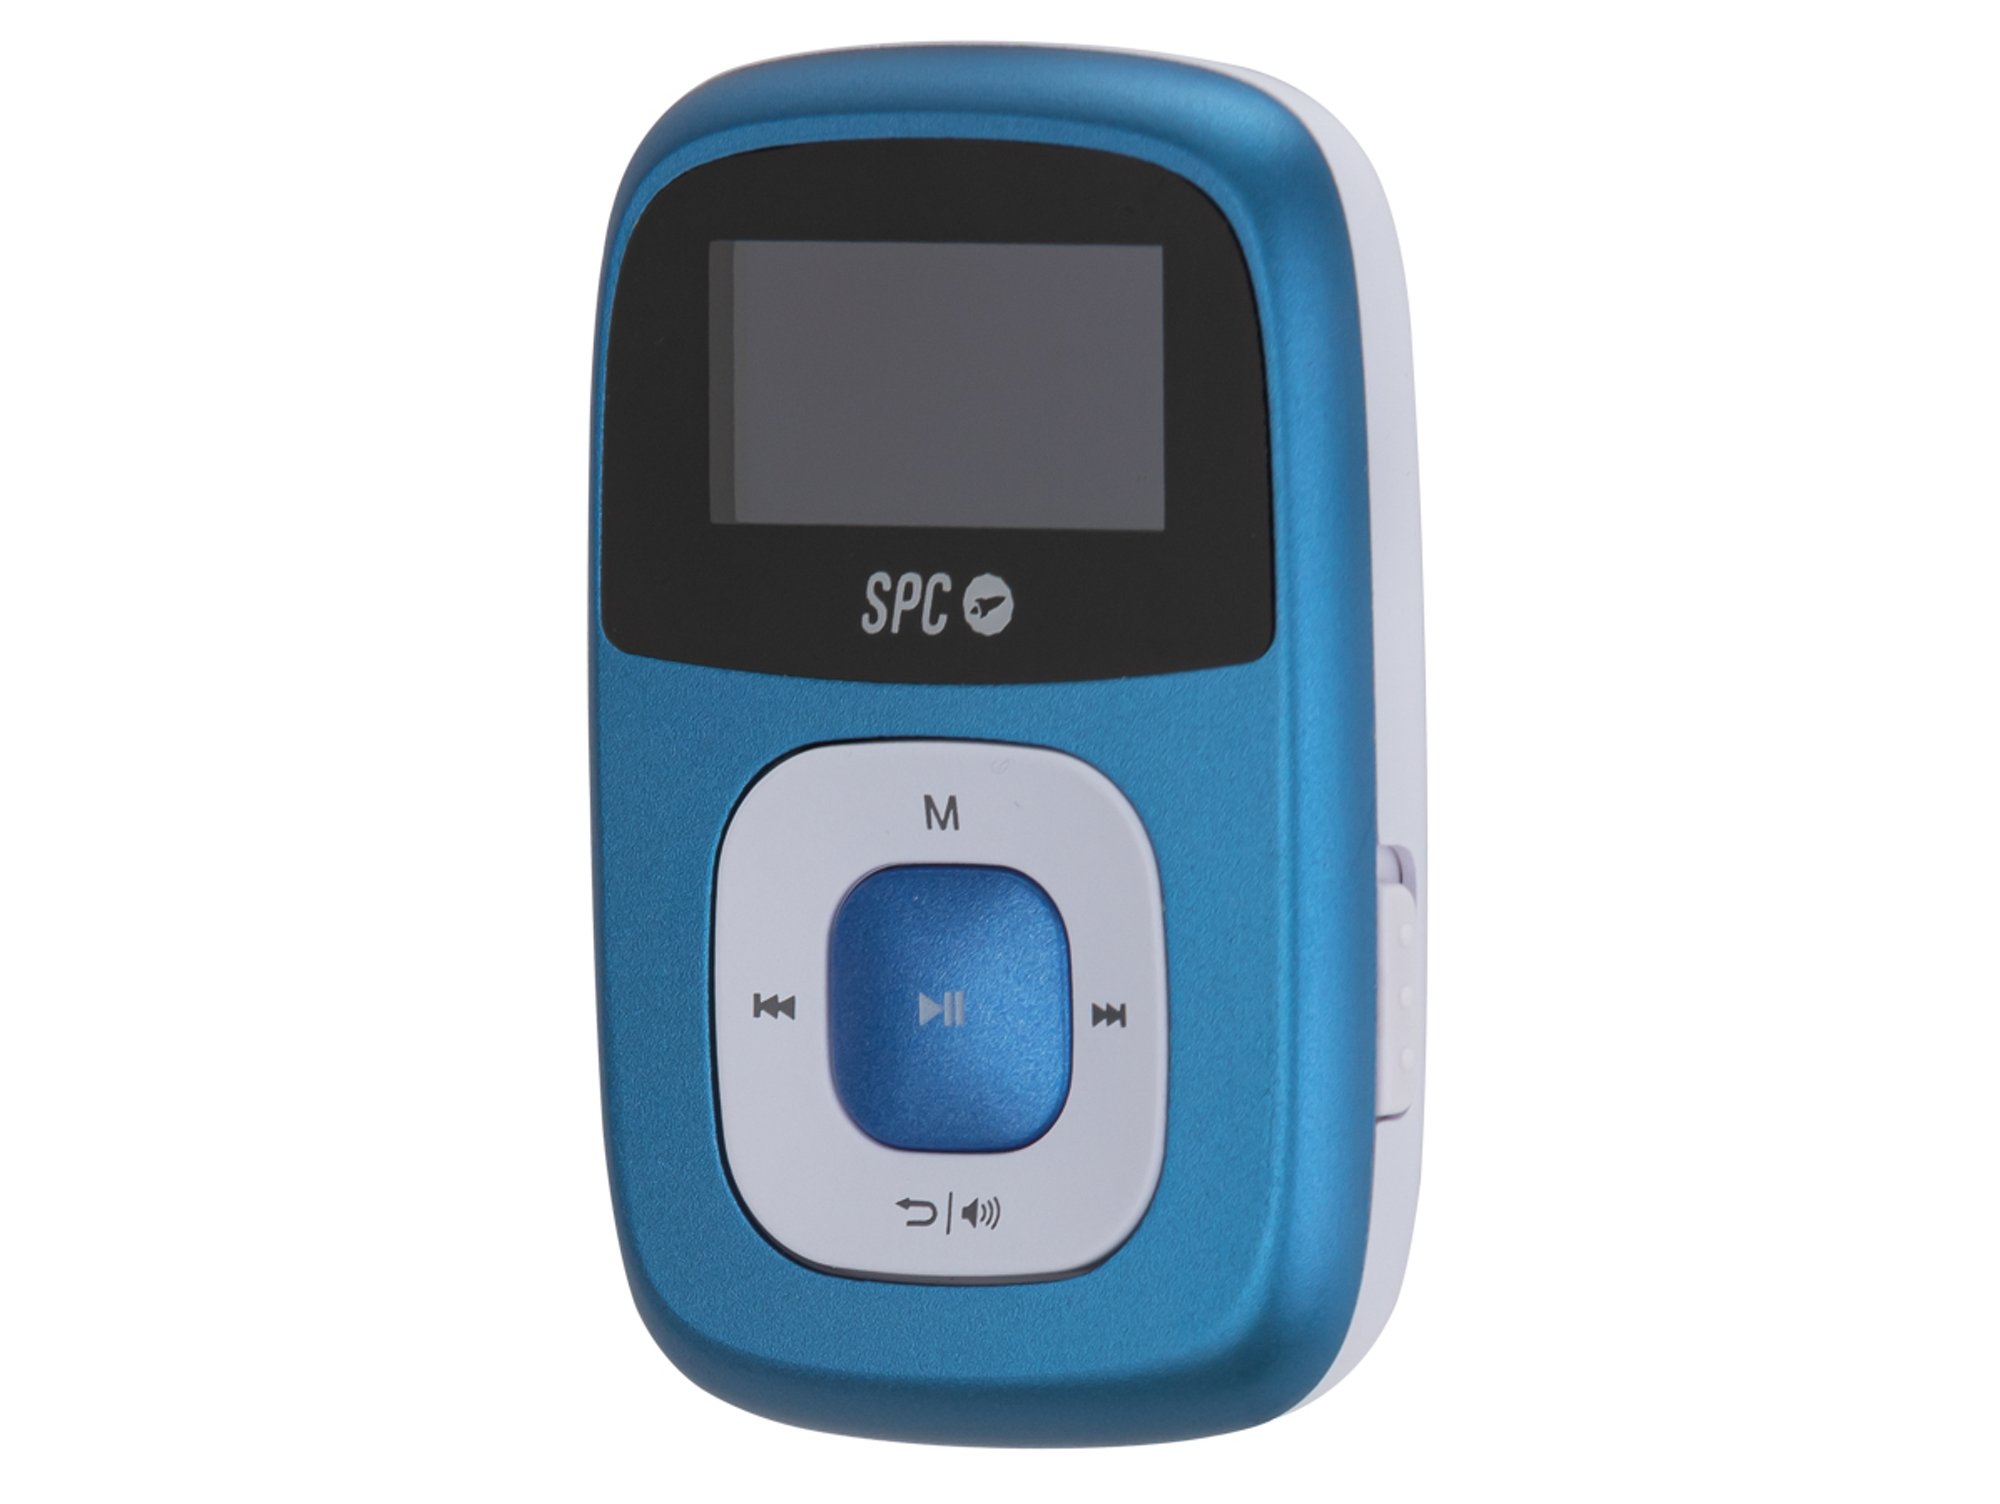 Reproductor de audio MP3 de 4 GB con radio, azul